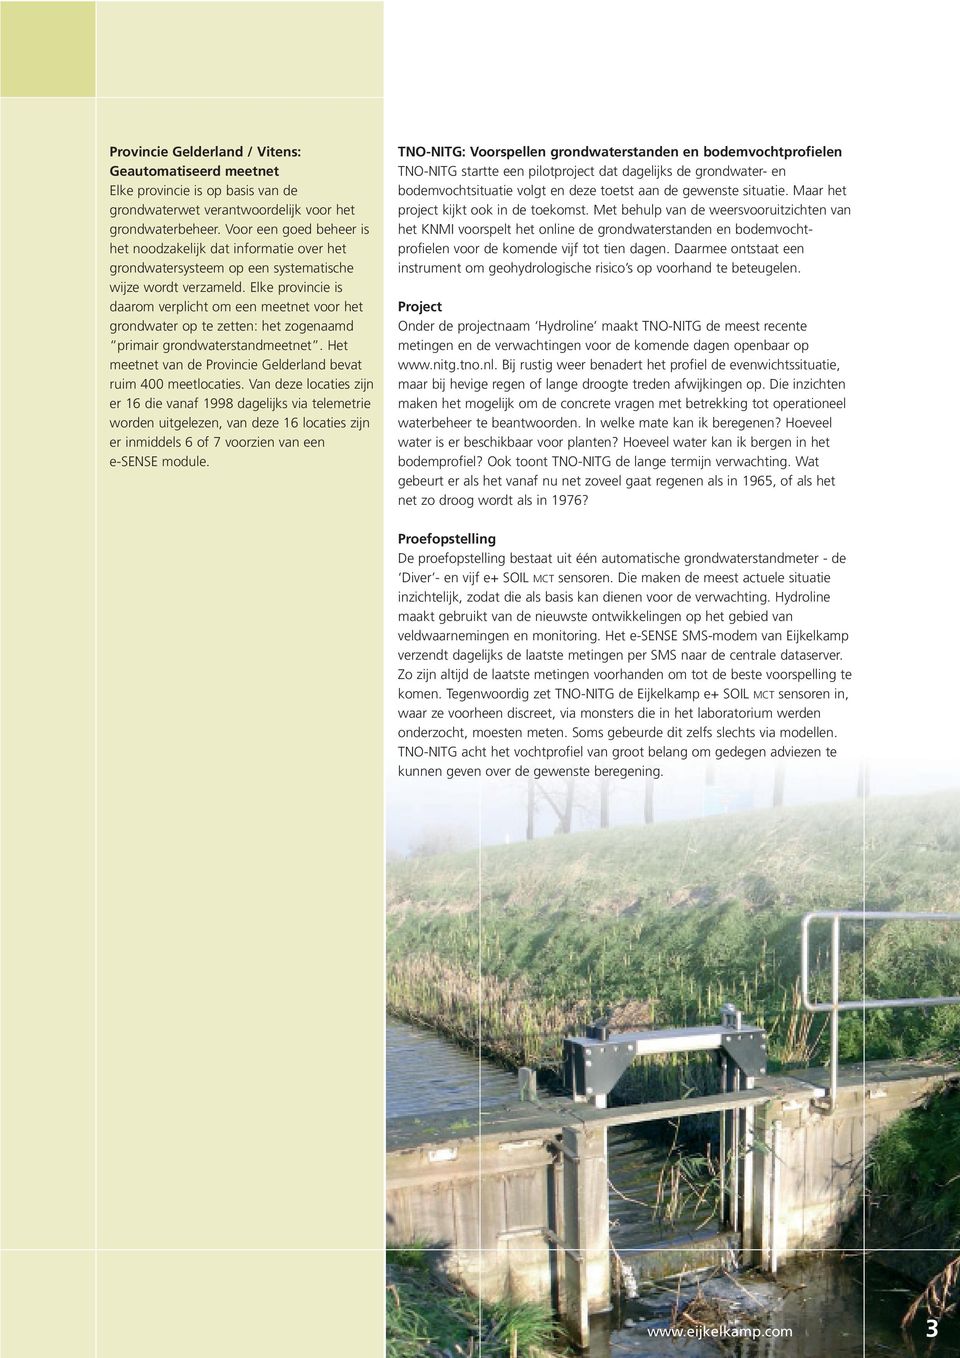 Elke provincie is daarom verplicht om een meetnet voor het grondwater op te zetten: het zogenaamd primair grondwaterstandmeetnet. Het meetnet van de Provincie Gelderland bevat ruim 400 meetlocaties.